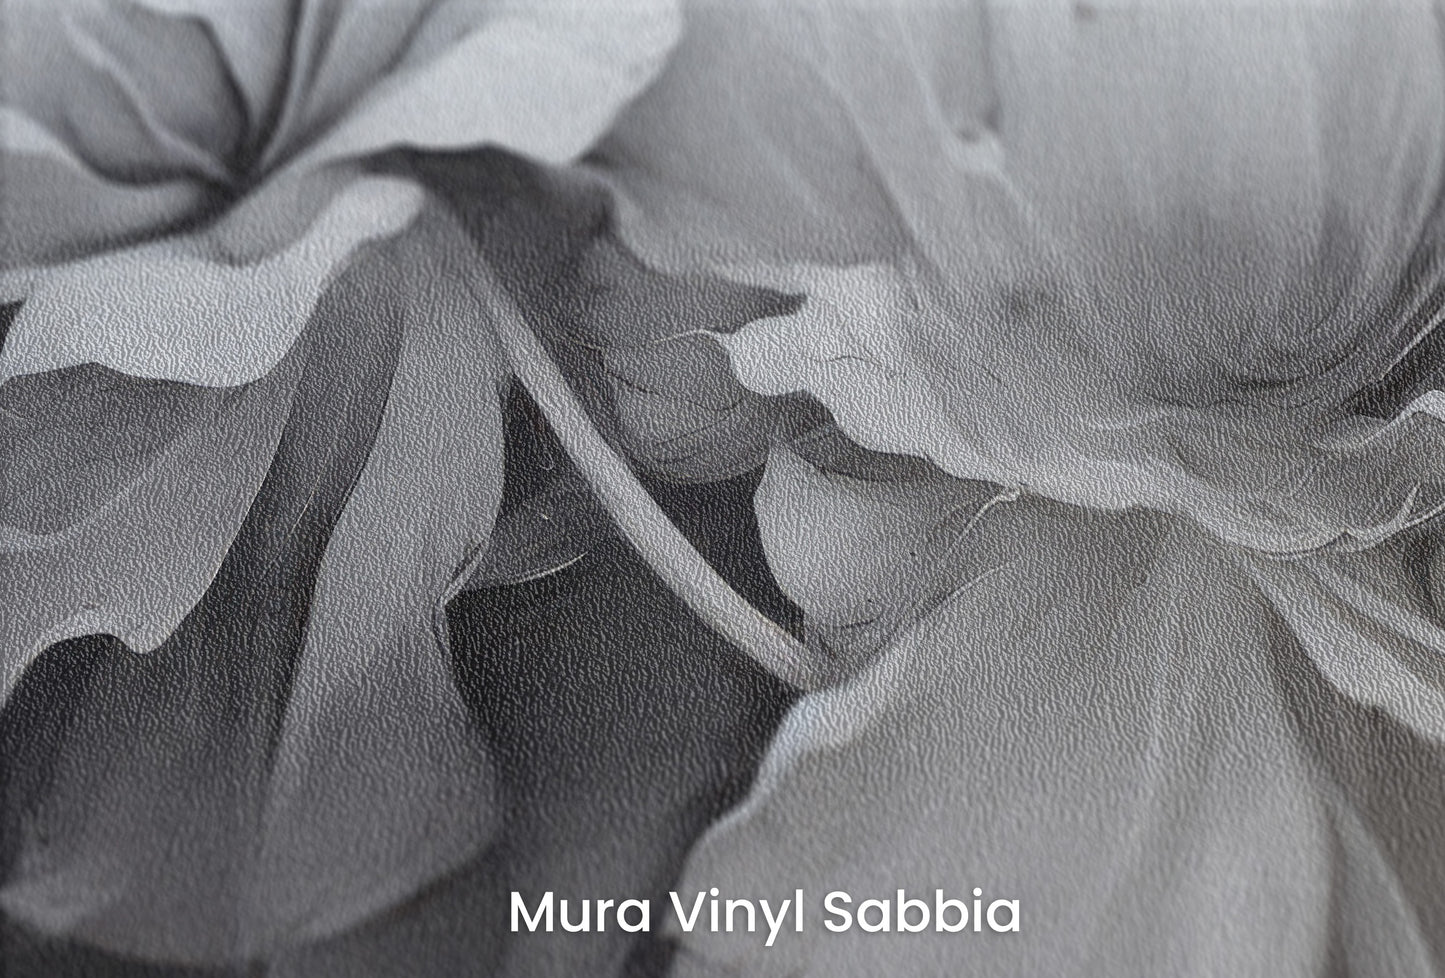 Zbliżenie na artystyczną fototapetę o nazwie SILVER WHISPERING PETALS na podłożu Mura Vinyl Sabbia struktura grubego ziarna piasku.